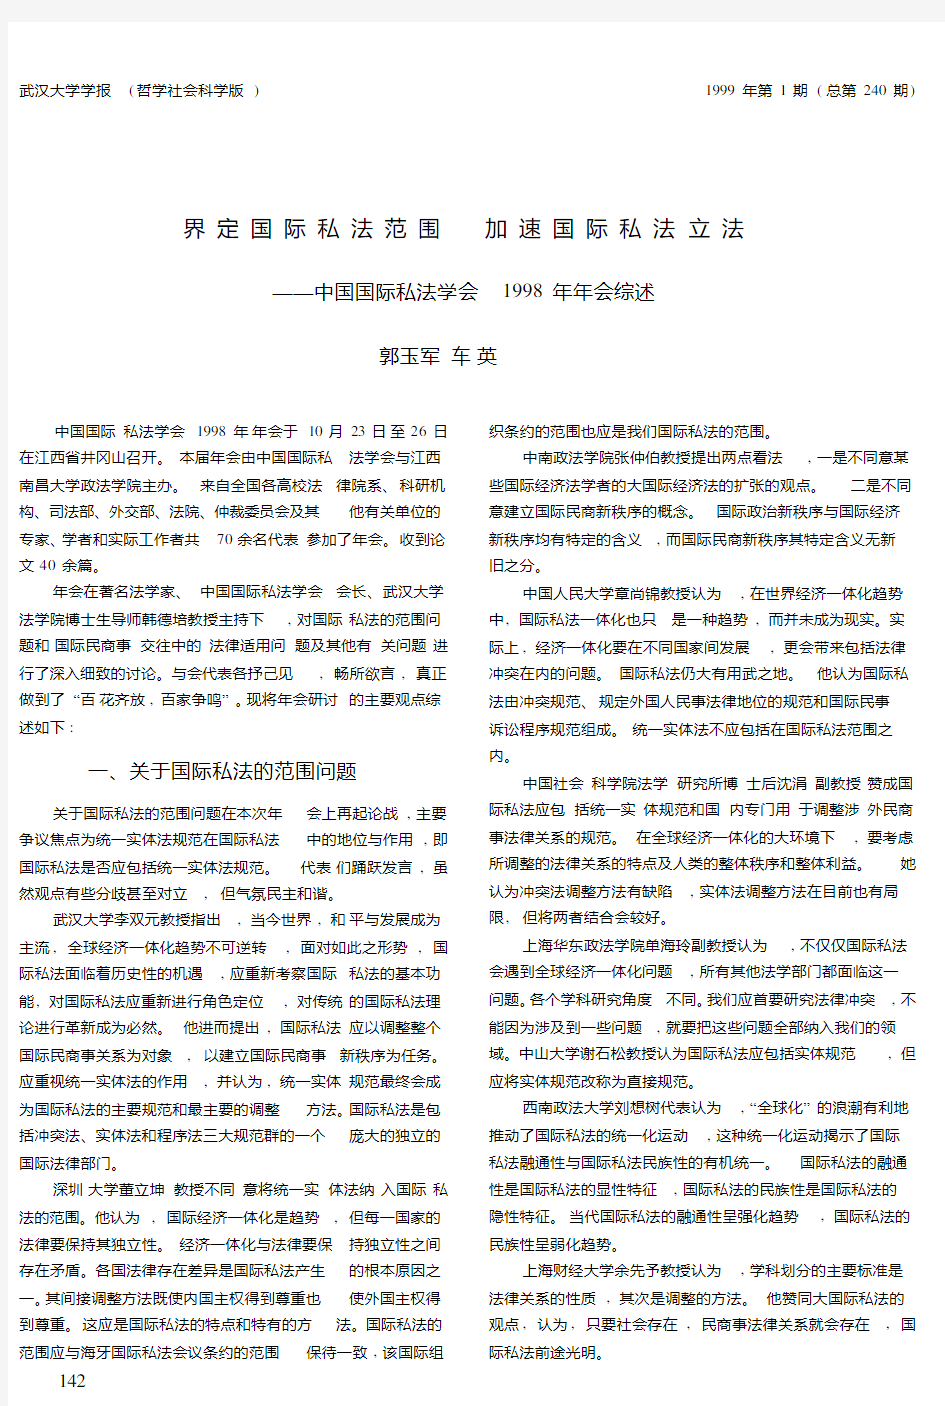 界定国际私法范围  加速国际私法立法——中国国际私法学会1998年年会综述